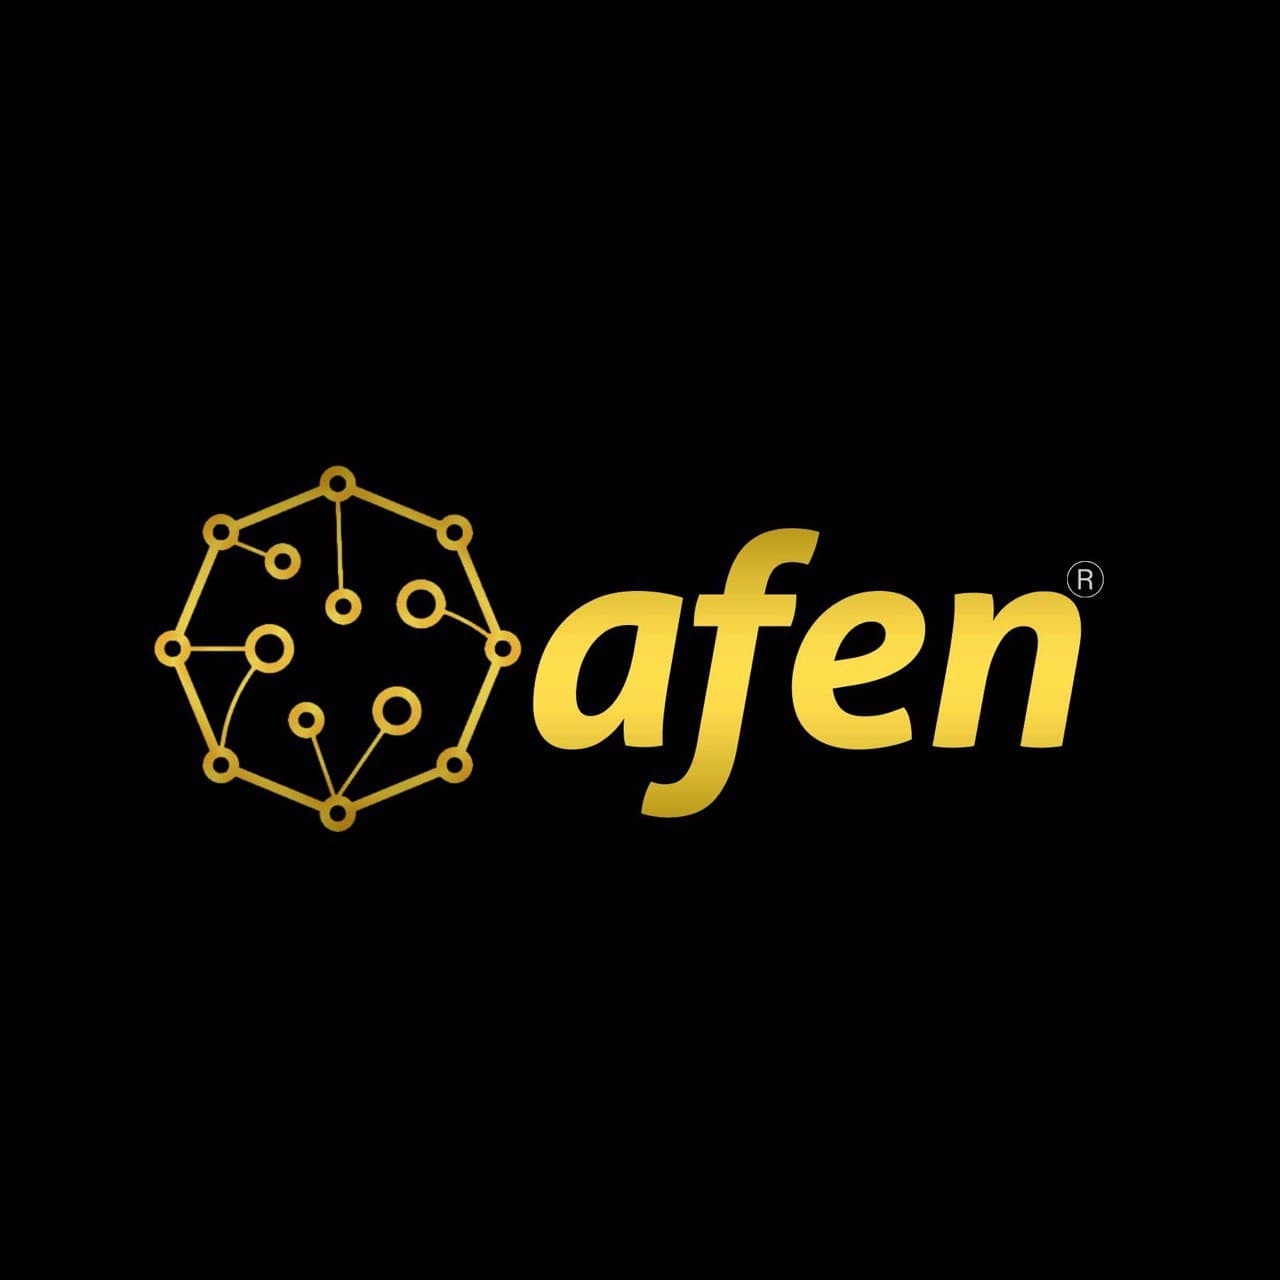 AFEN Blockchain Network